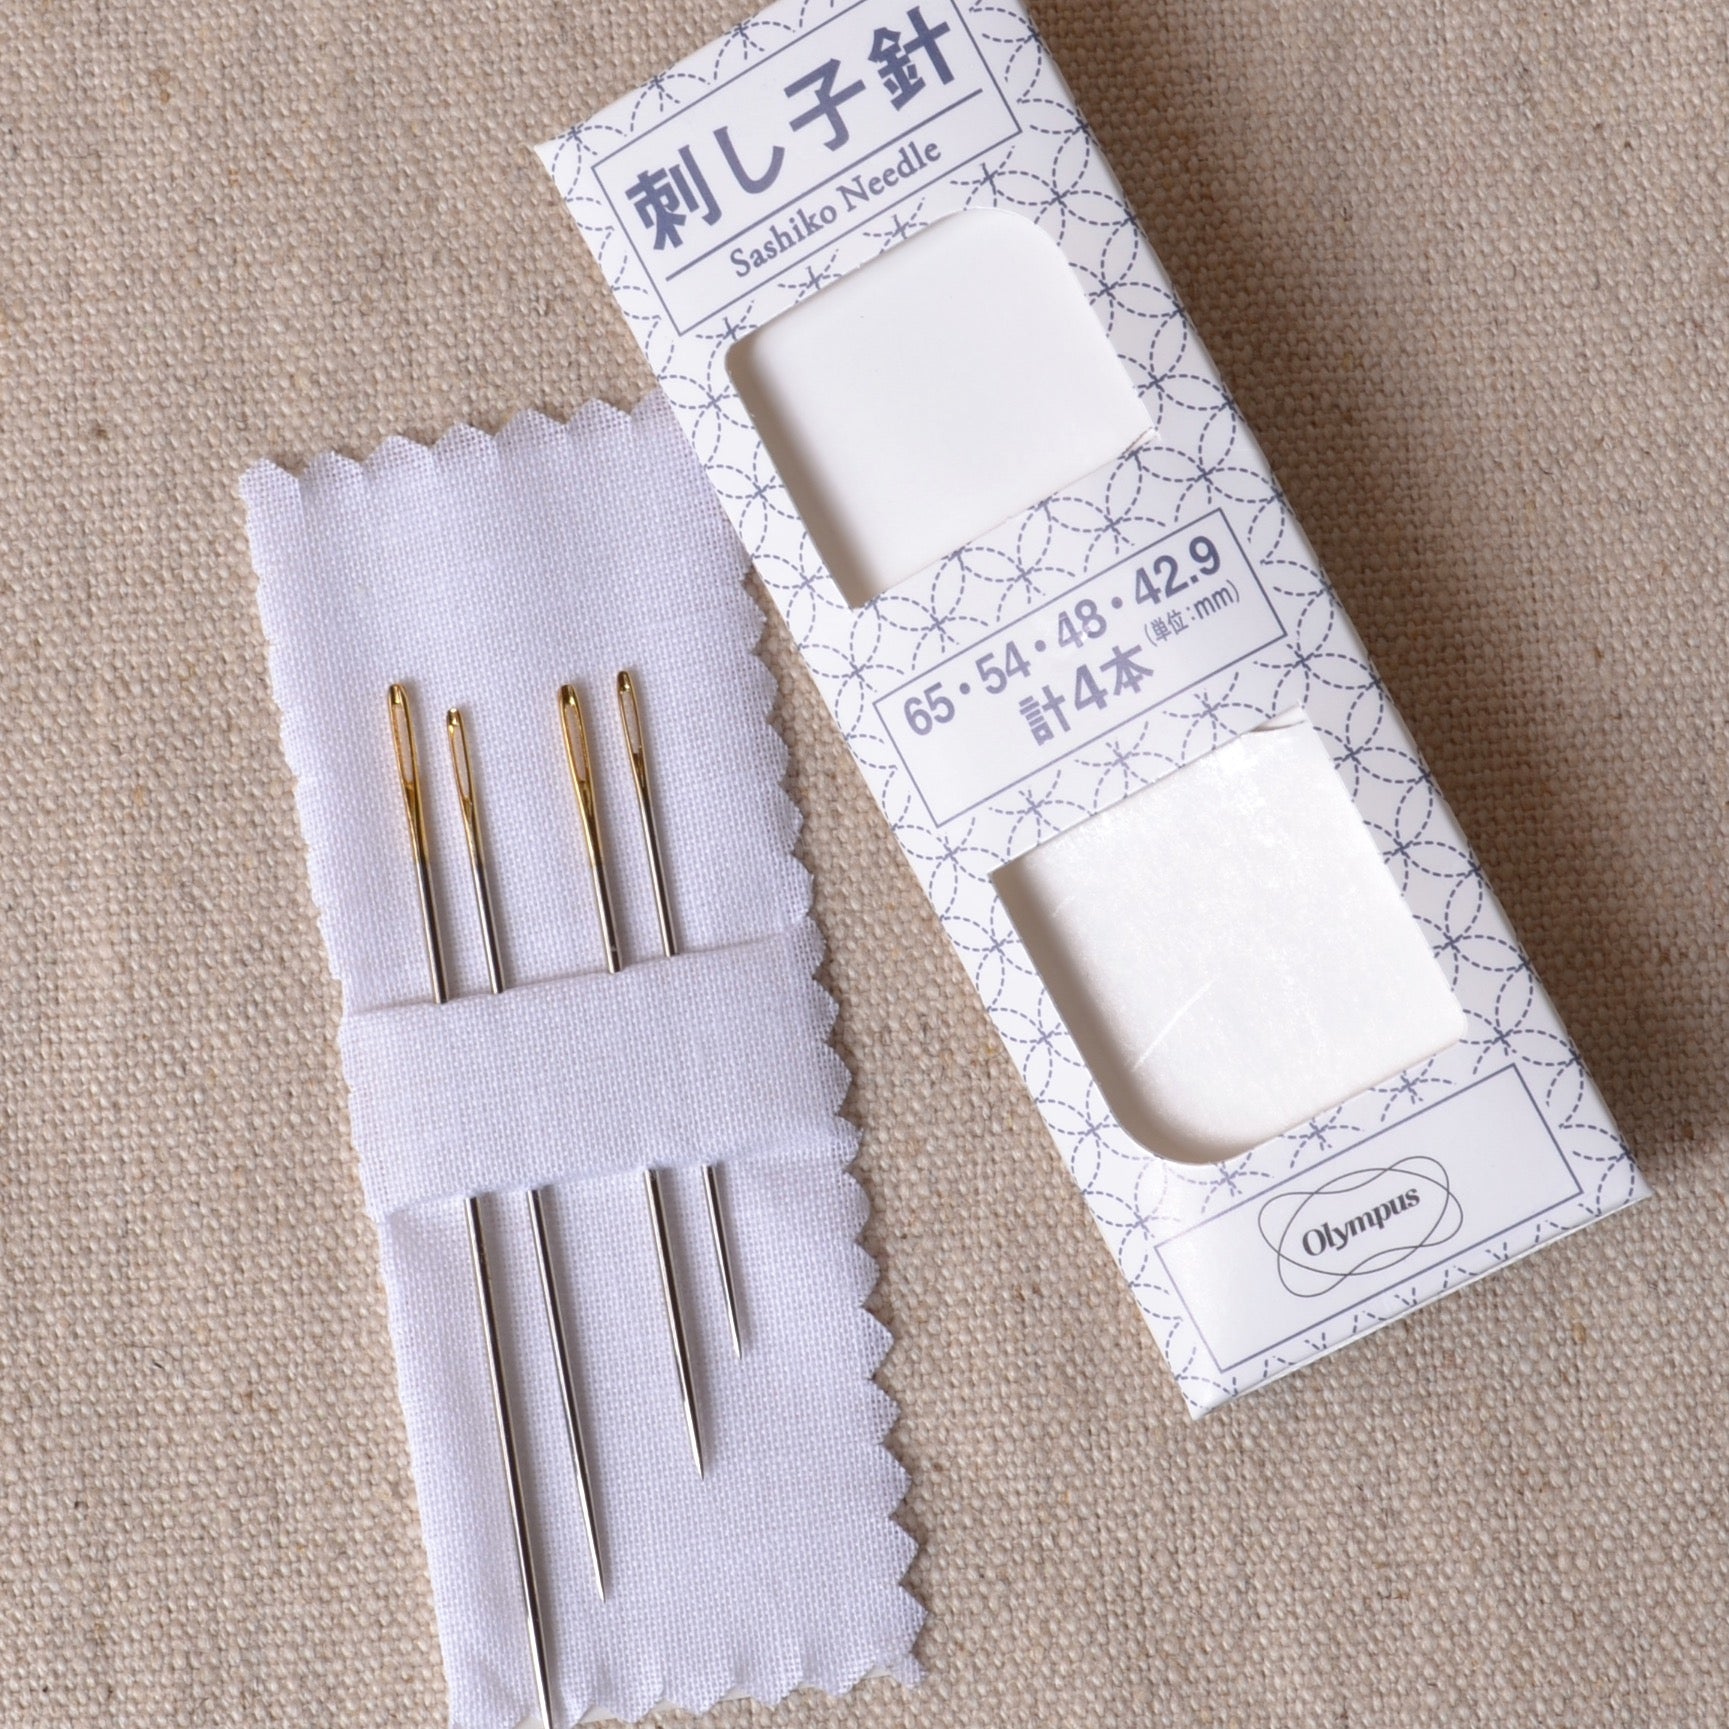 Good quality needles for sashiko and mending 